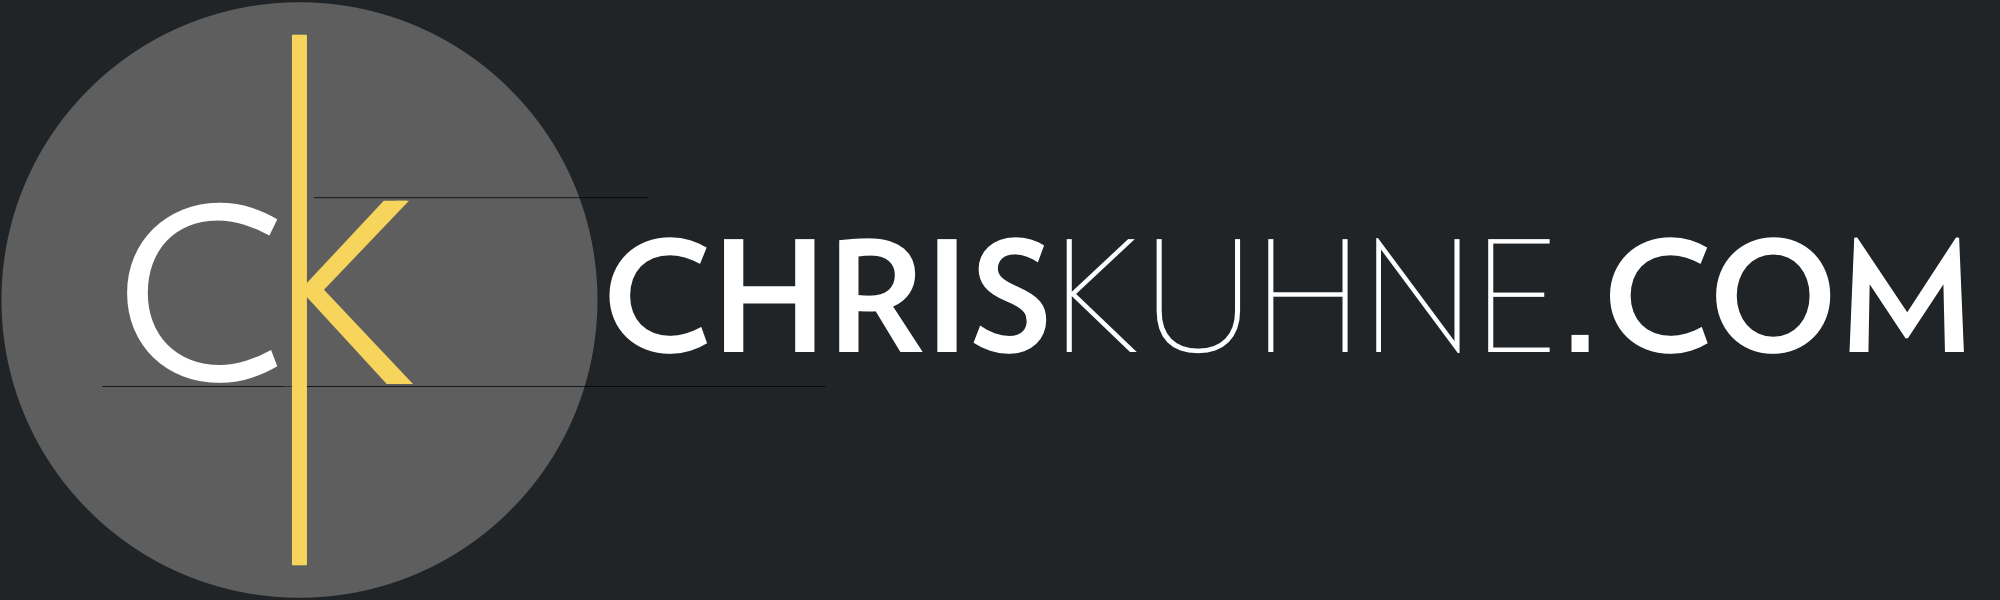 ChrisKuhne.com